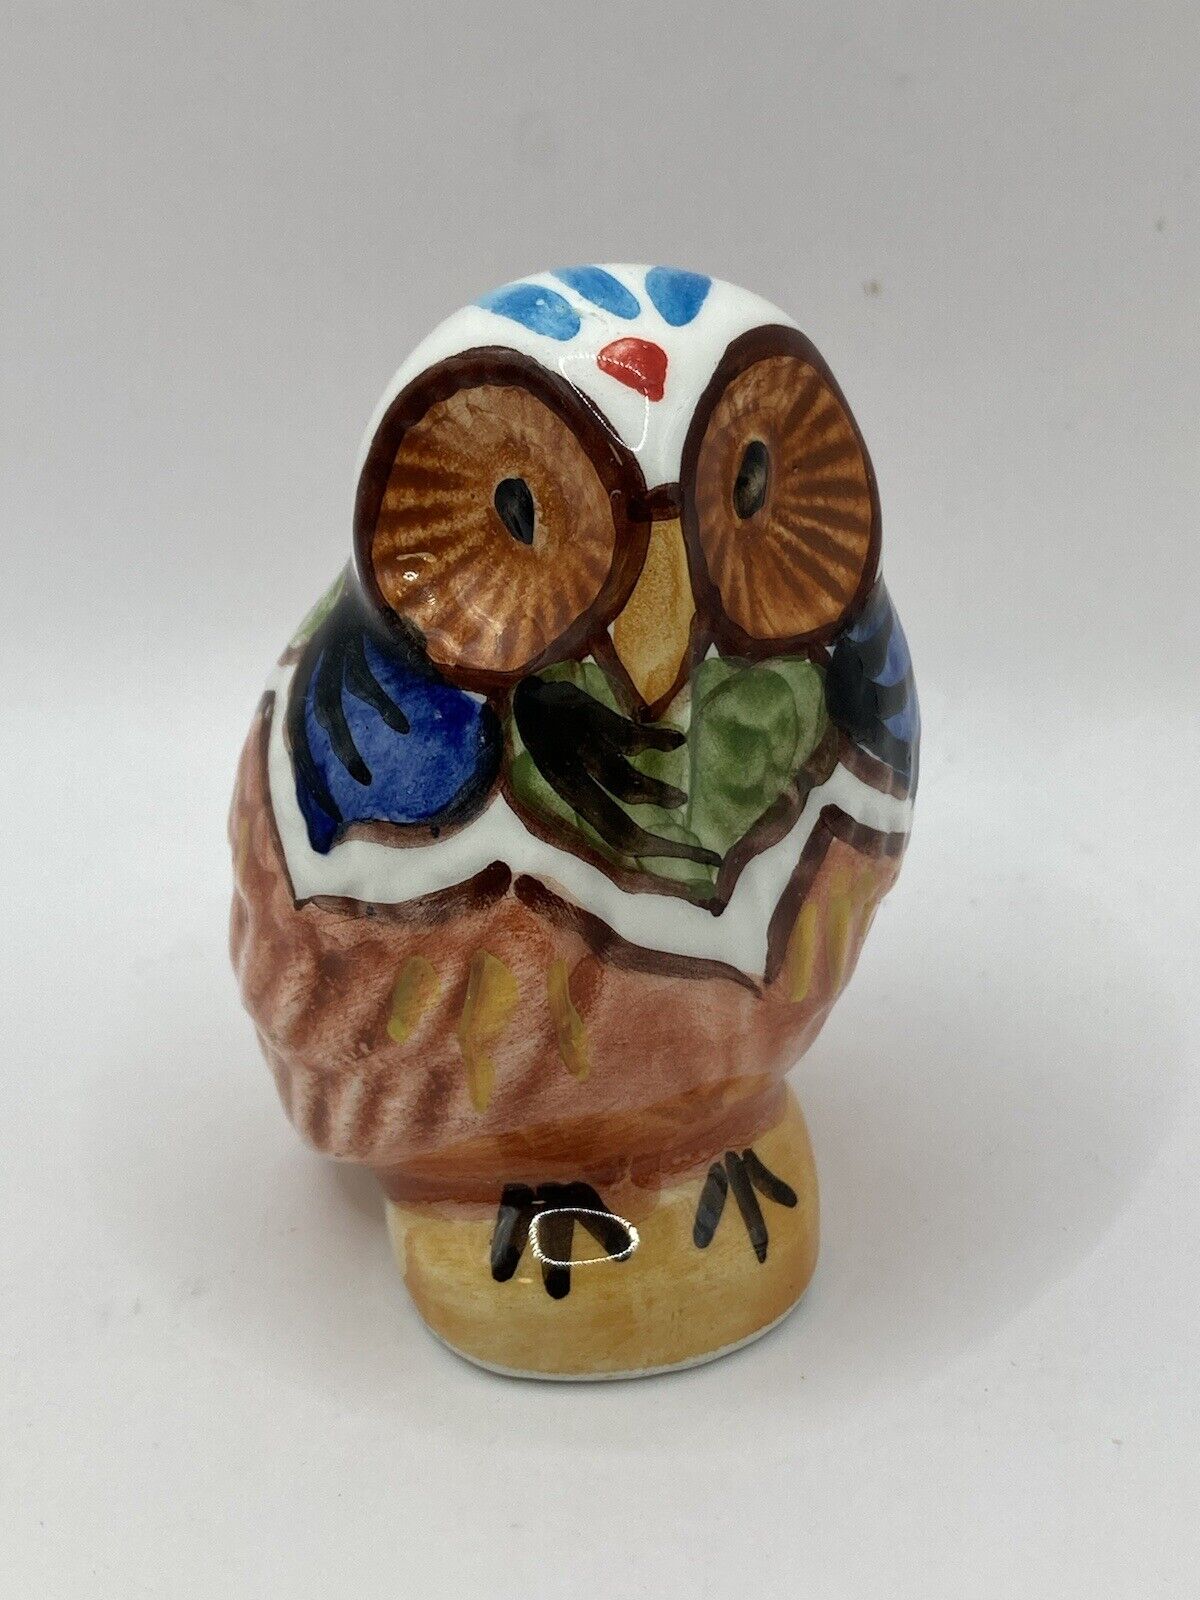 Vintage Ceramic Hand Painted Multi-Colored Owl Figurine. 3.5” Tall Artist Signed